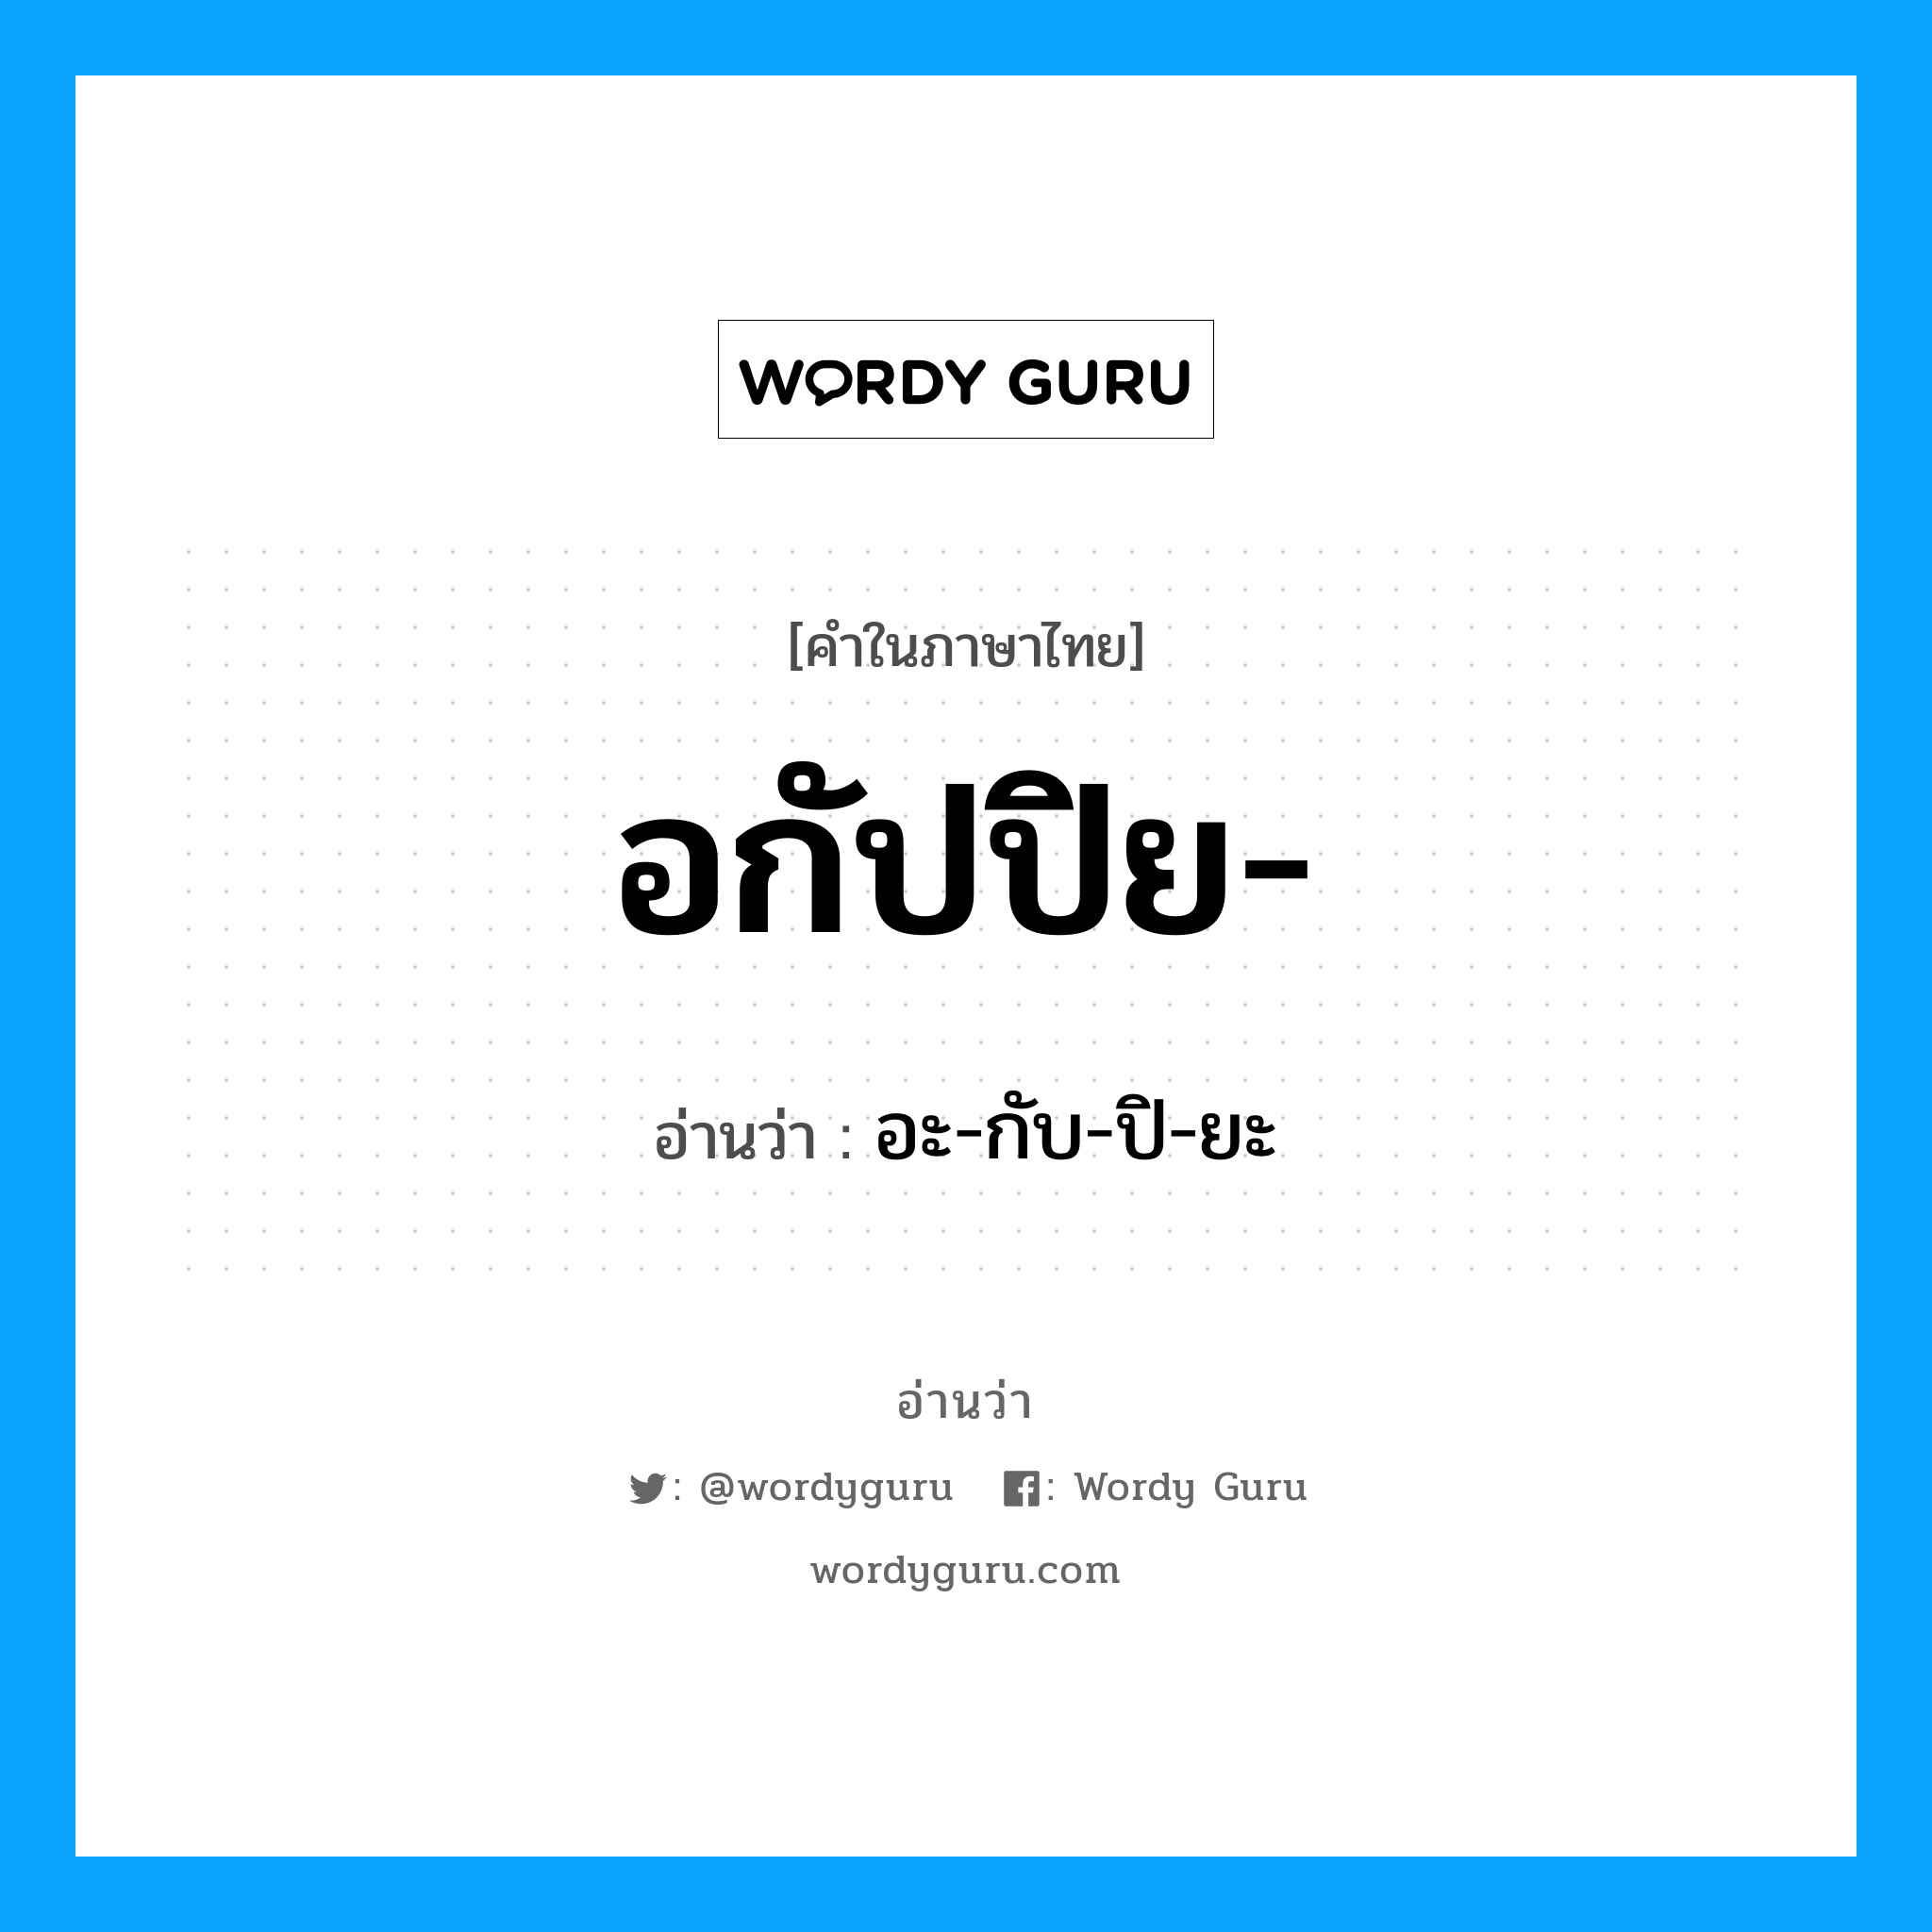 อกัปปิย อ่านว่า?, คำในภาษาไทย อกัปปิย- อ่านว่า อะ-กับ-ปิ-ยะ